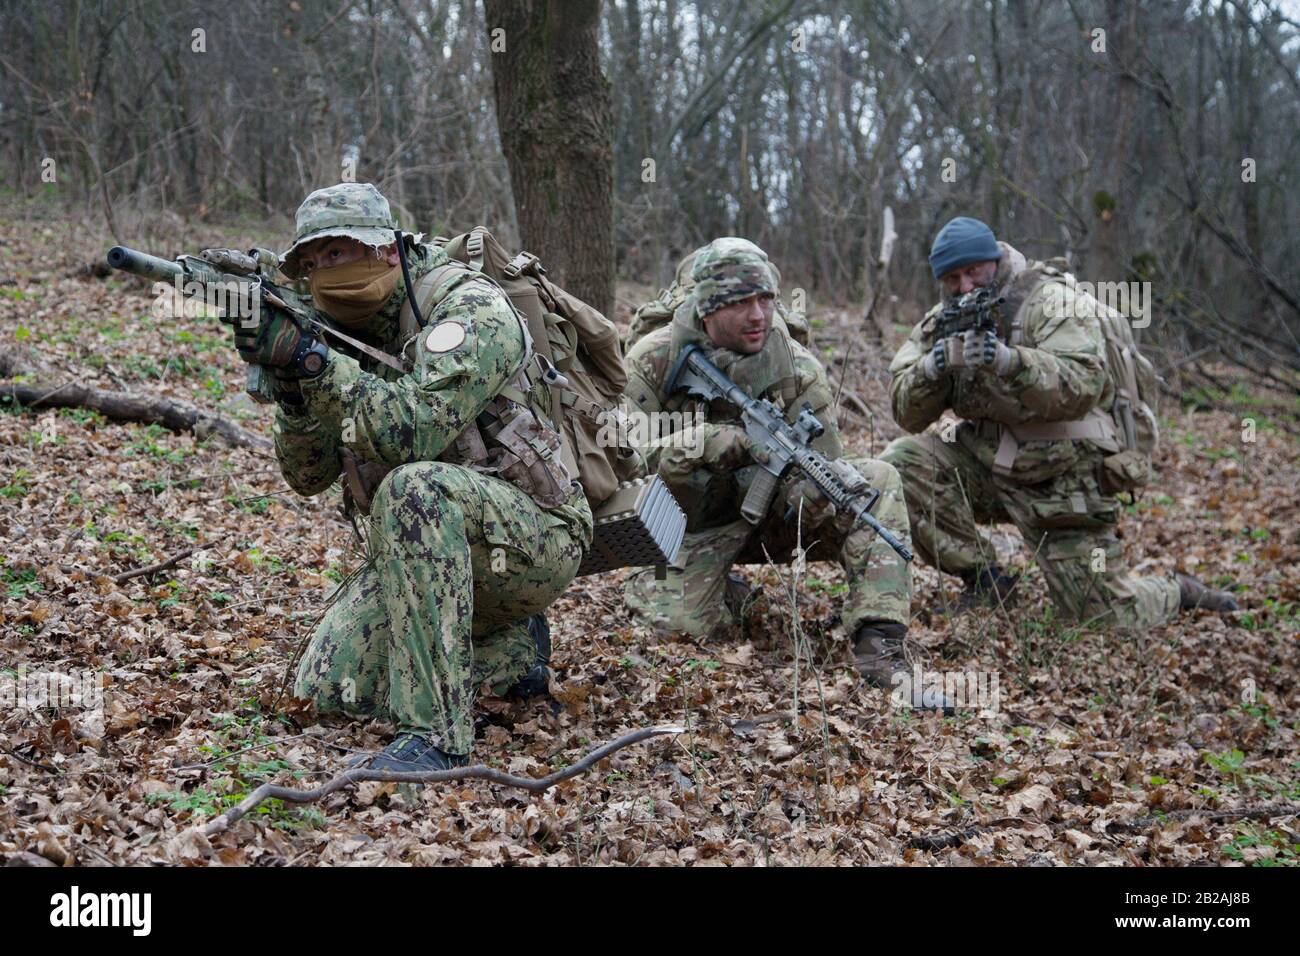 El equipo de soldados militares del ejército llevaba uniformes de camuflaje  y municiones, fusiles de asalto armados, réplicas de ametralladoras,  escondidos en bosques, haciendo emboscada Fotografía de stock - Alamy